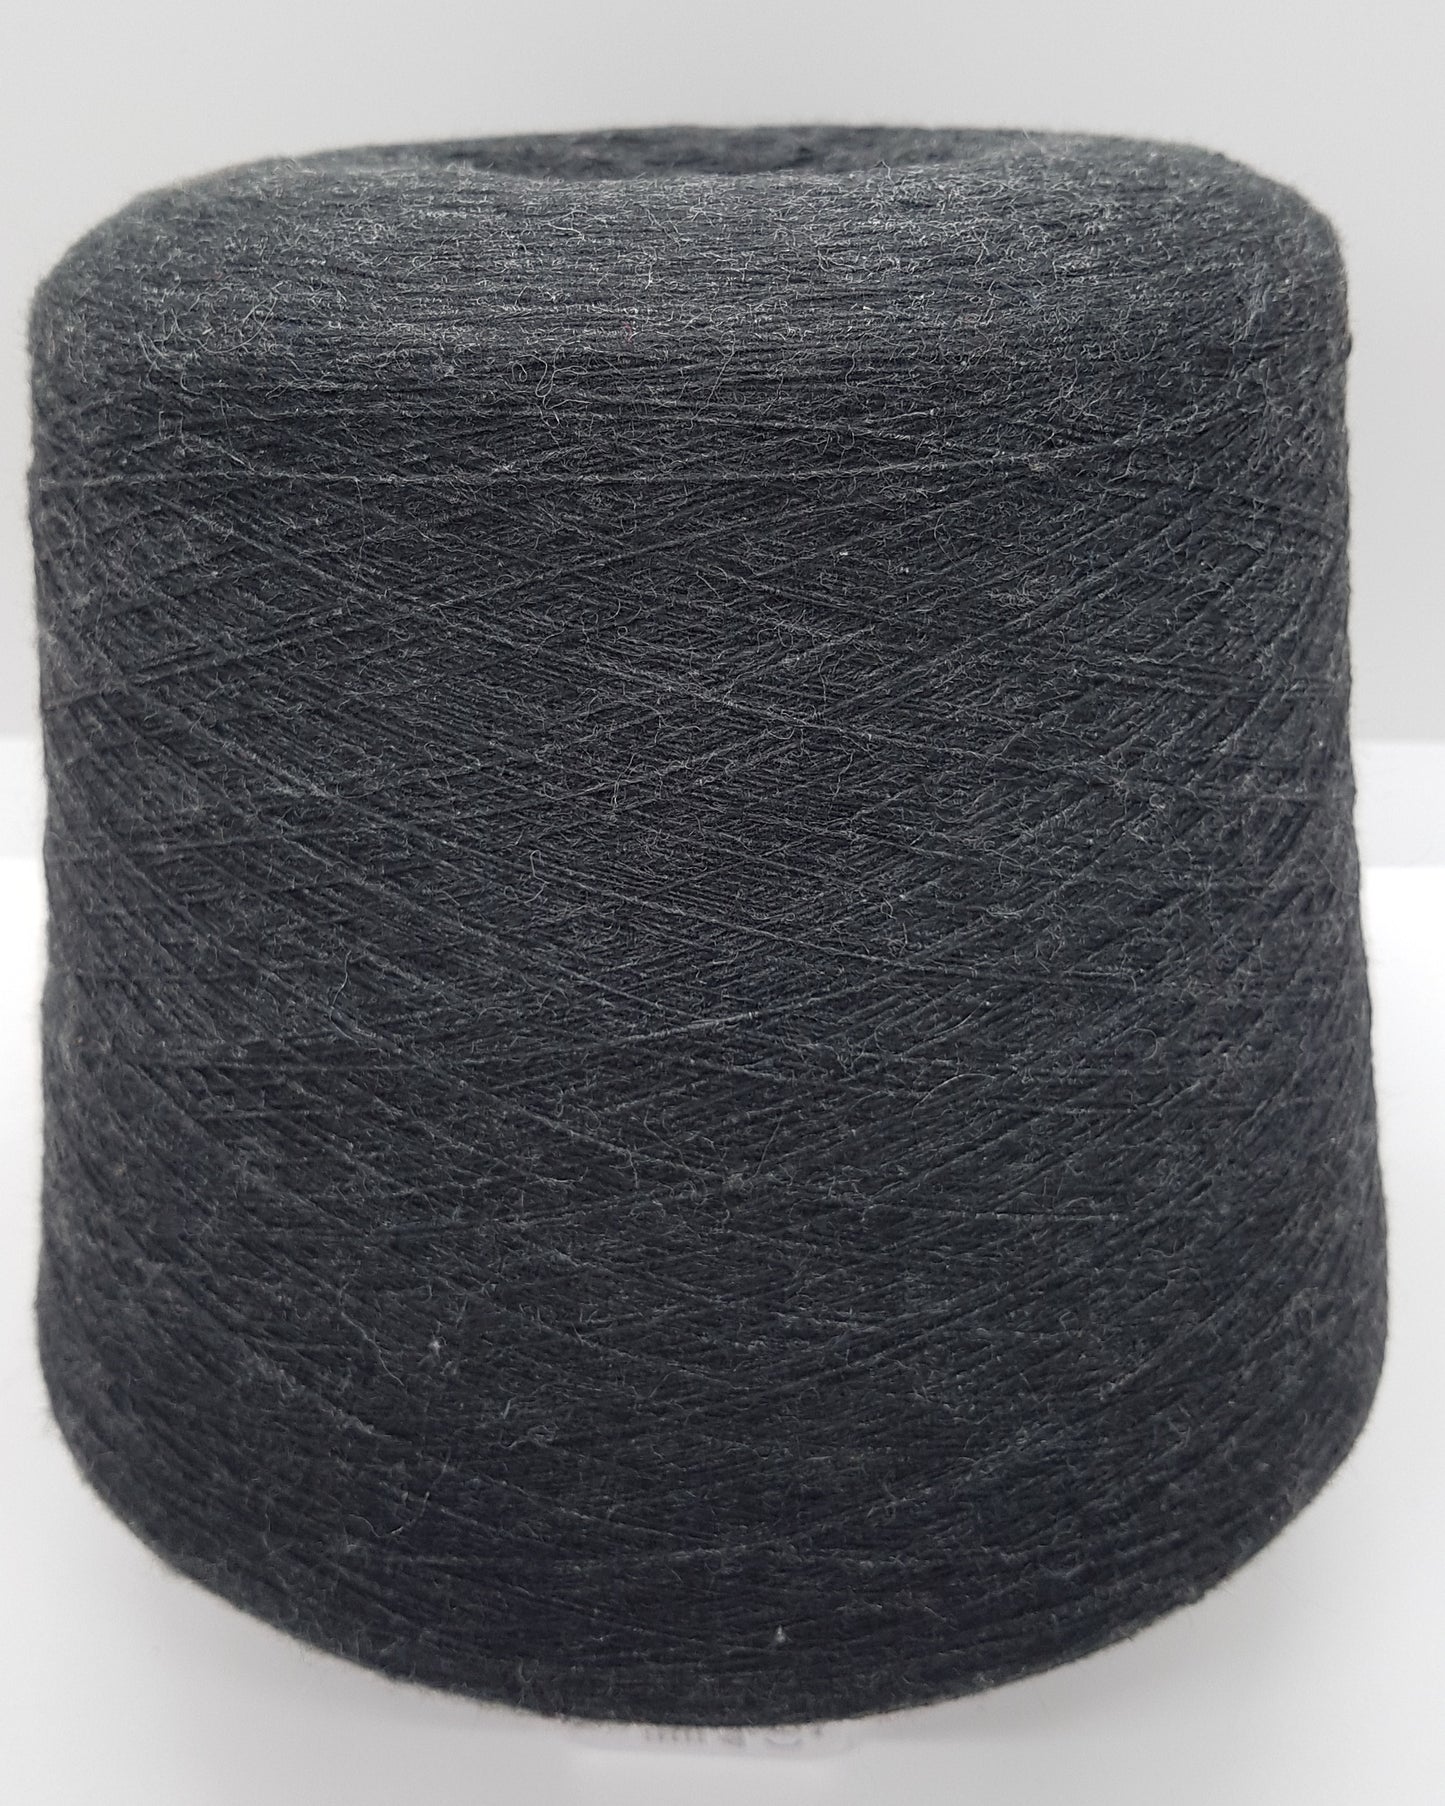 100g lana Merino hilo italiano color Antracita Negro N.310